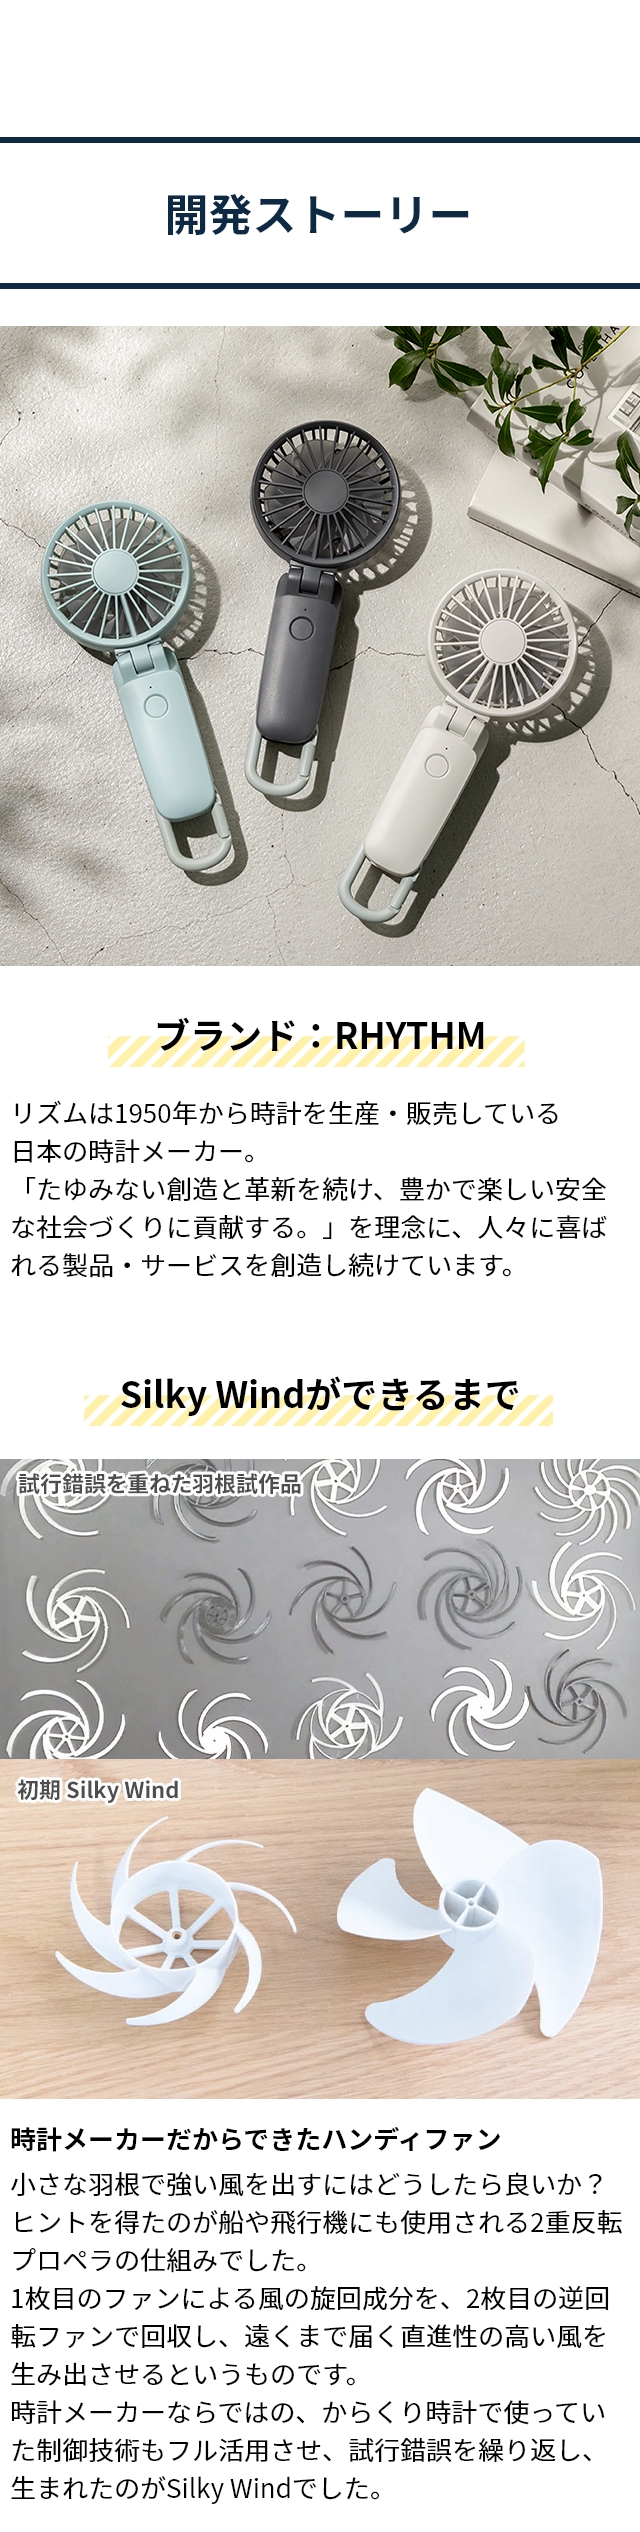 RHYTHM (リズム) シルキーウインドモバイル 3.1 (Silky Wind Mobile 3.1) 9ZF036RH